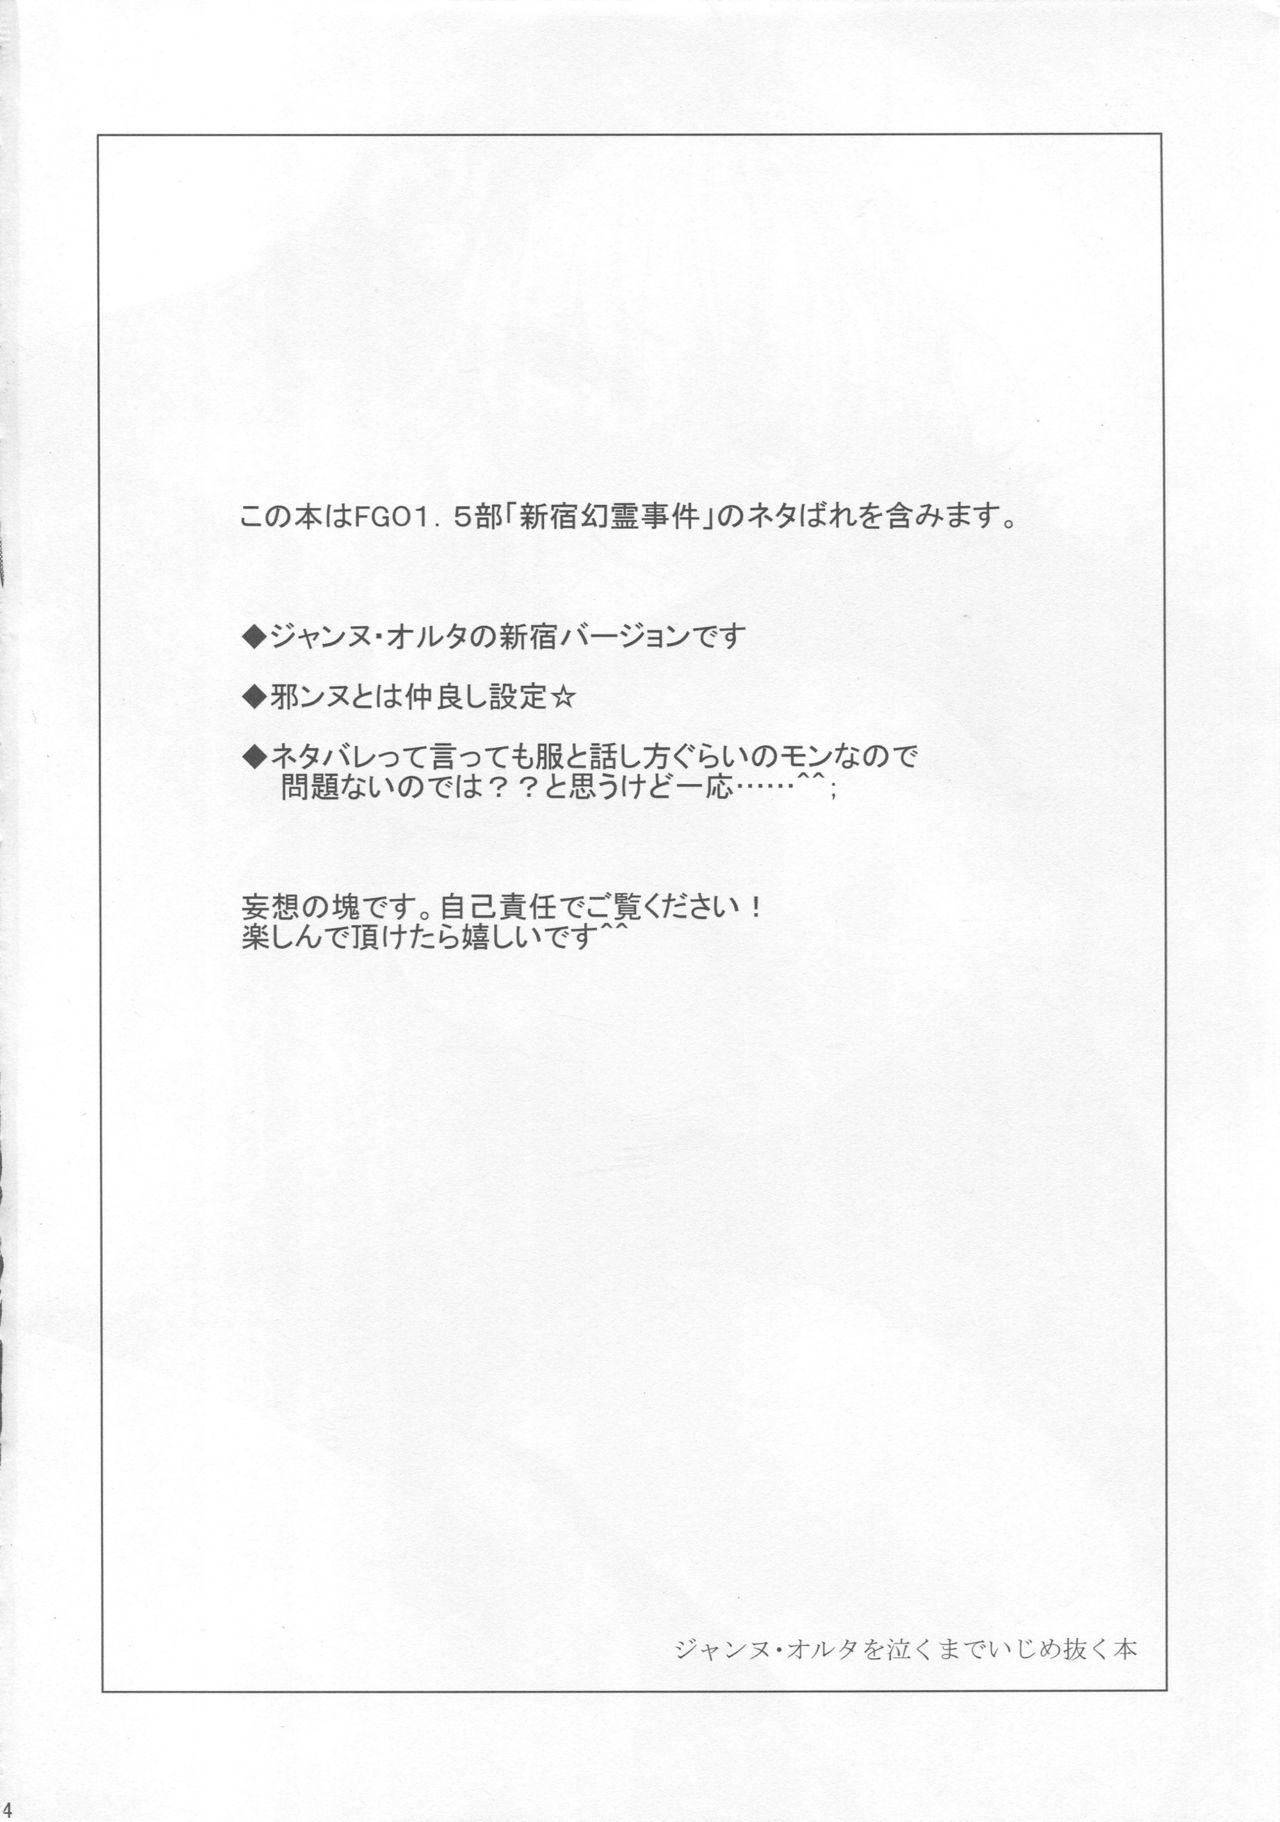 Webcam Jeanne Alter o Naku made Ijimenuku Hon - Fate grand order English - Page 3